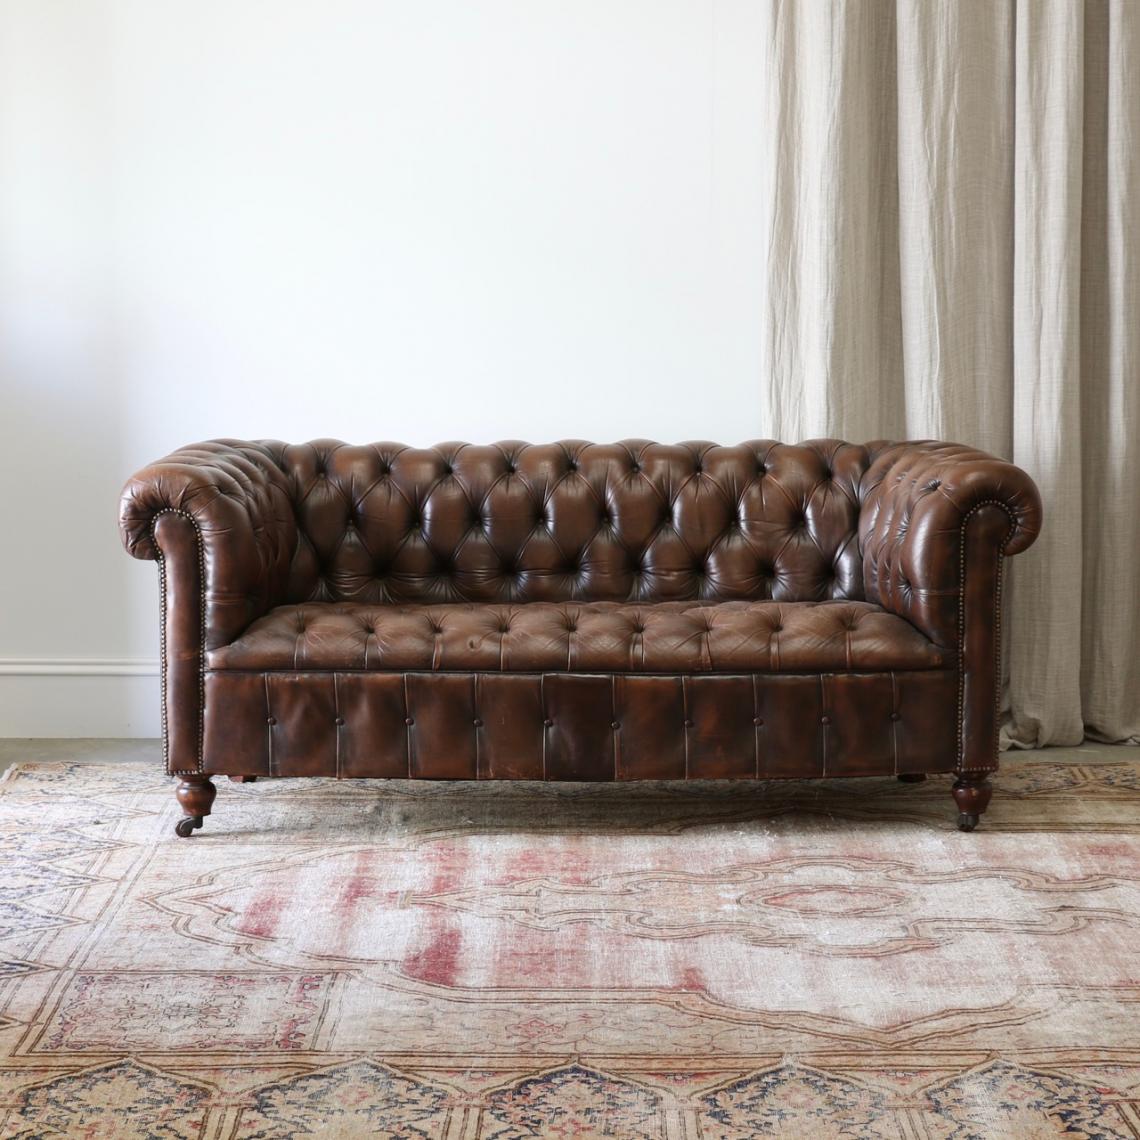 切斯特菲尔德老式皮革长沙发椅